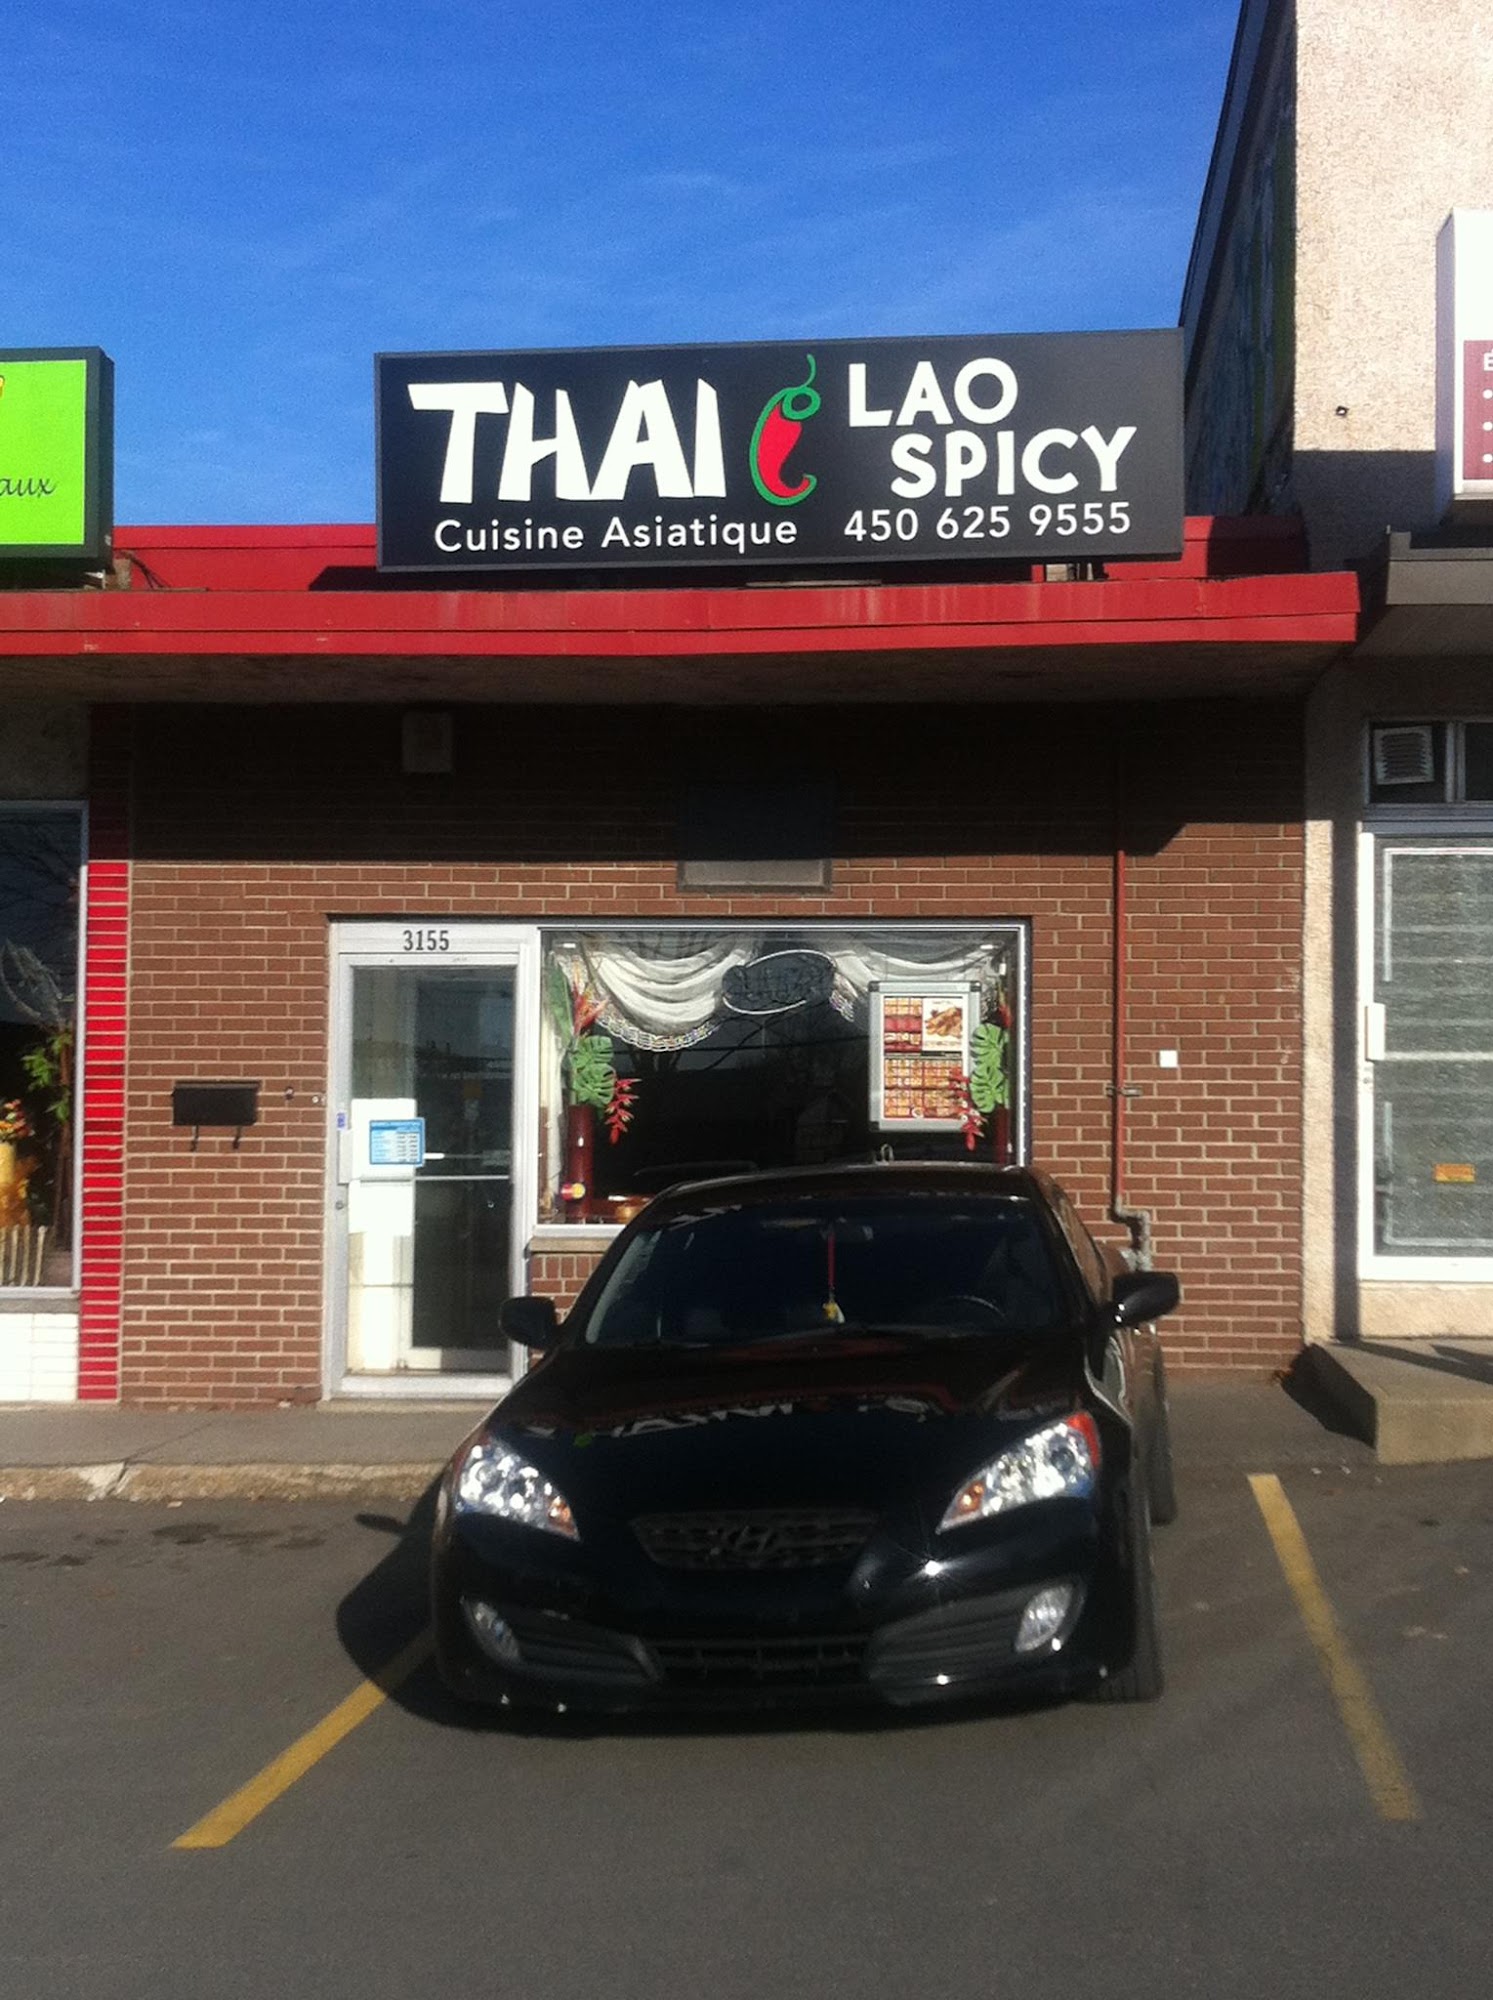 Thai & Lao Spicy